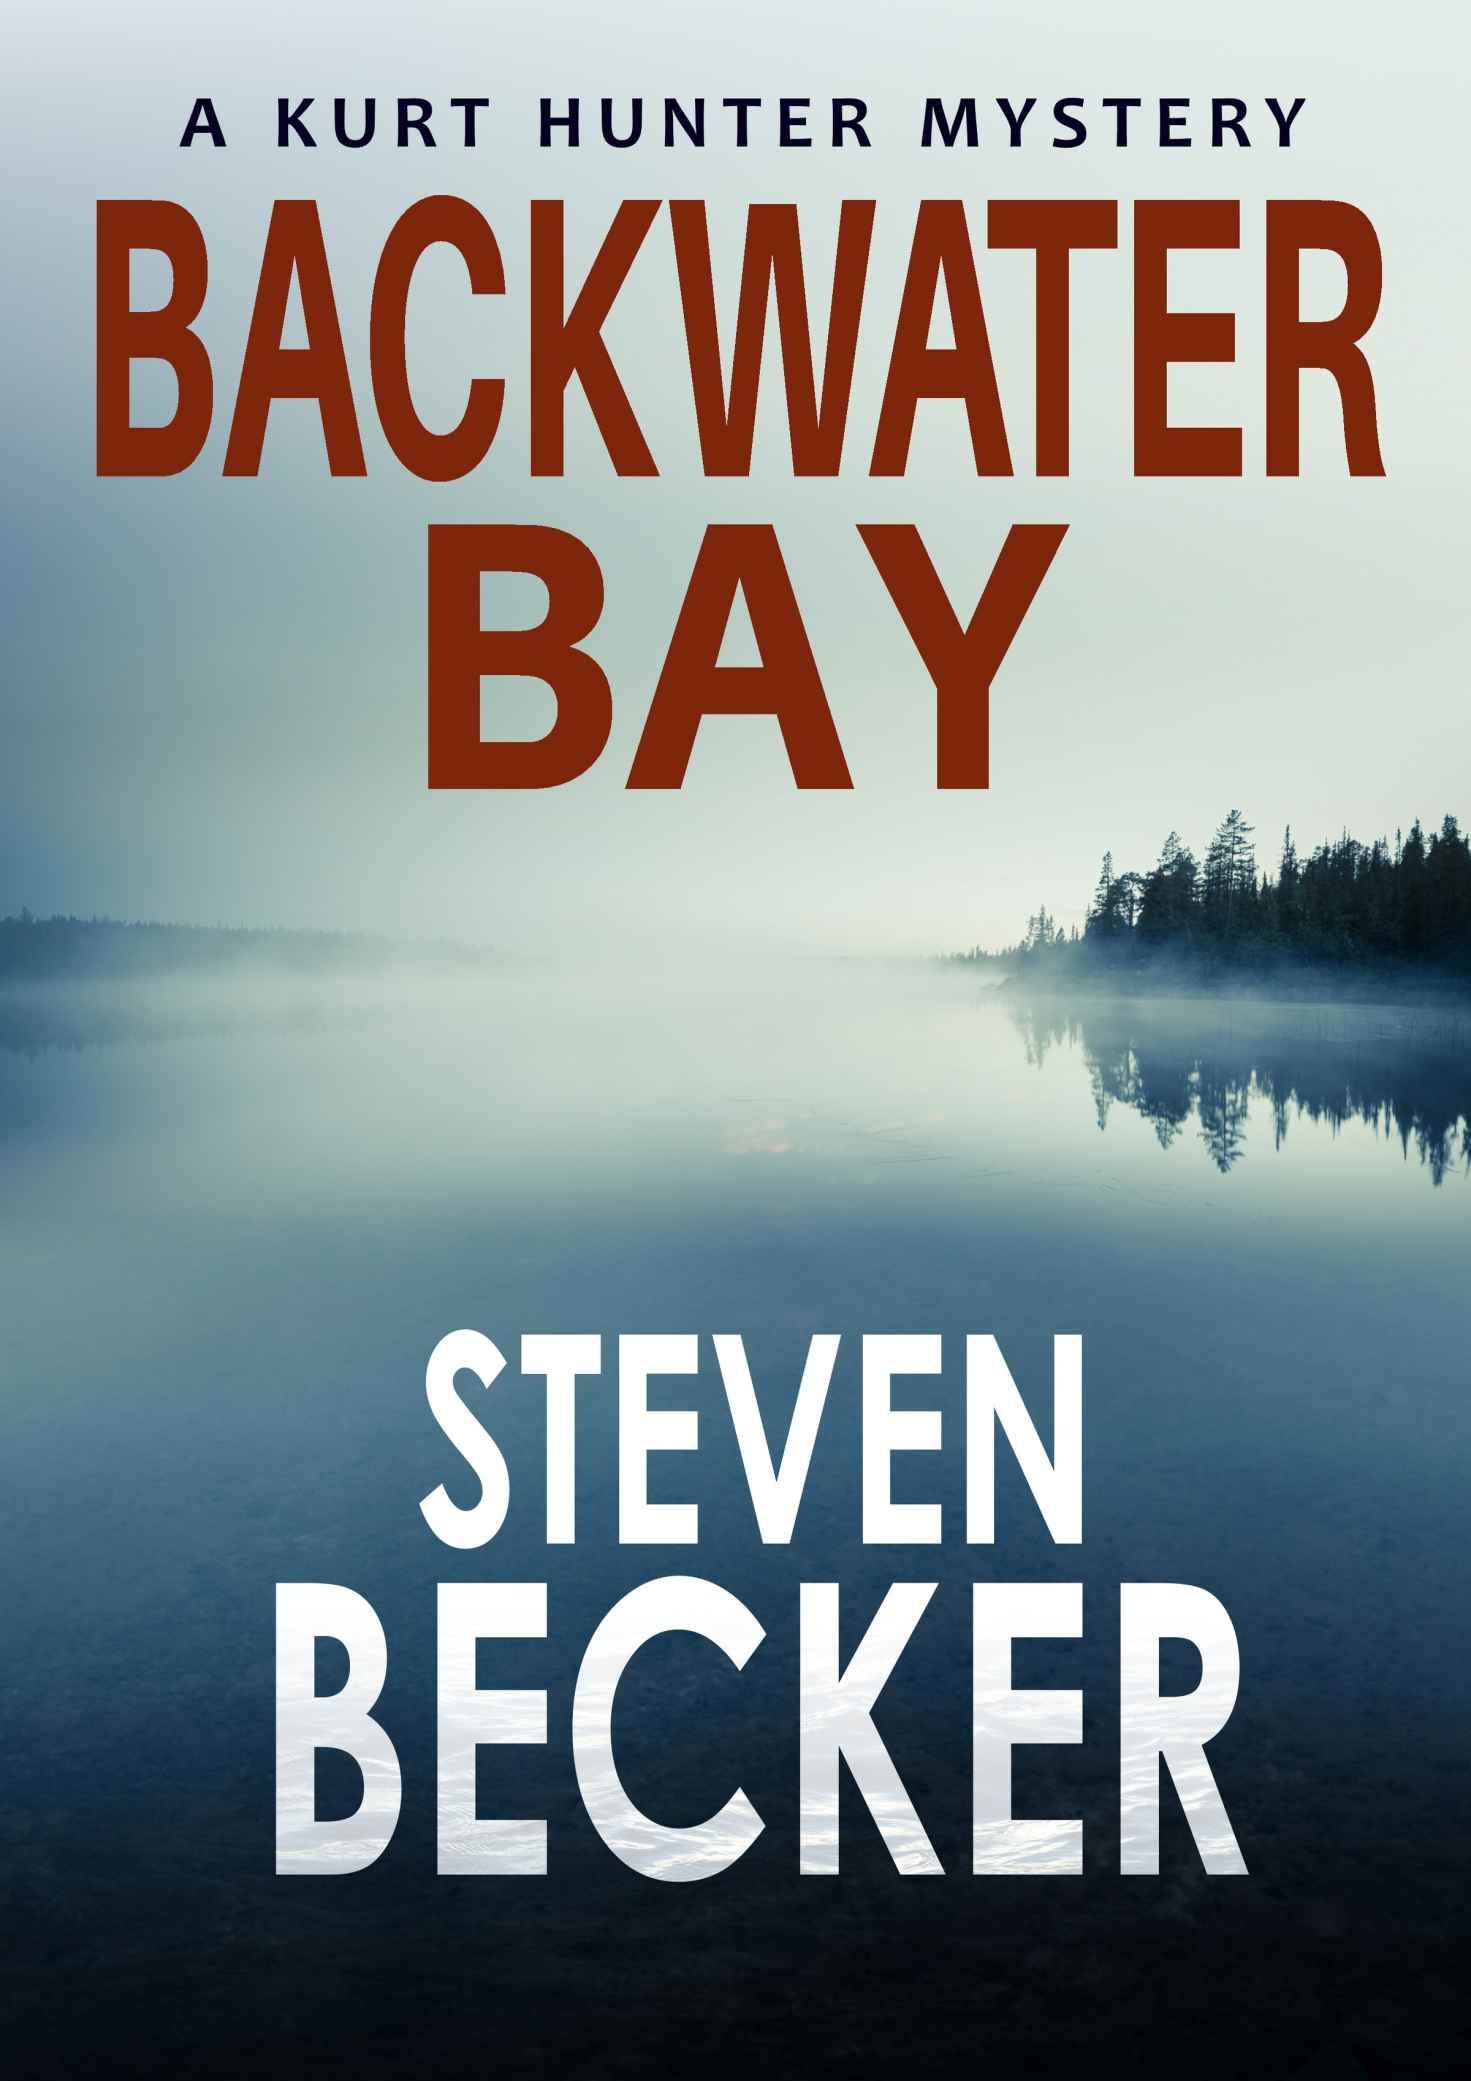 Backwater Bay